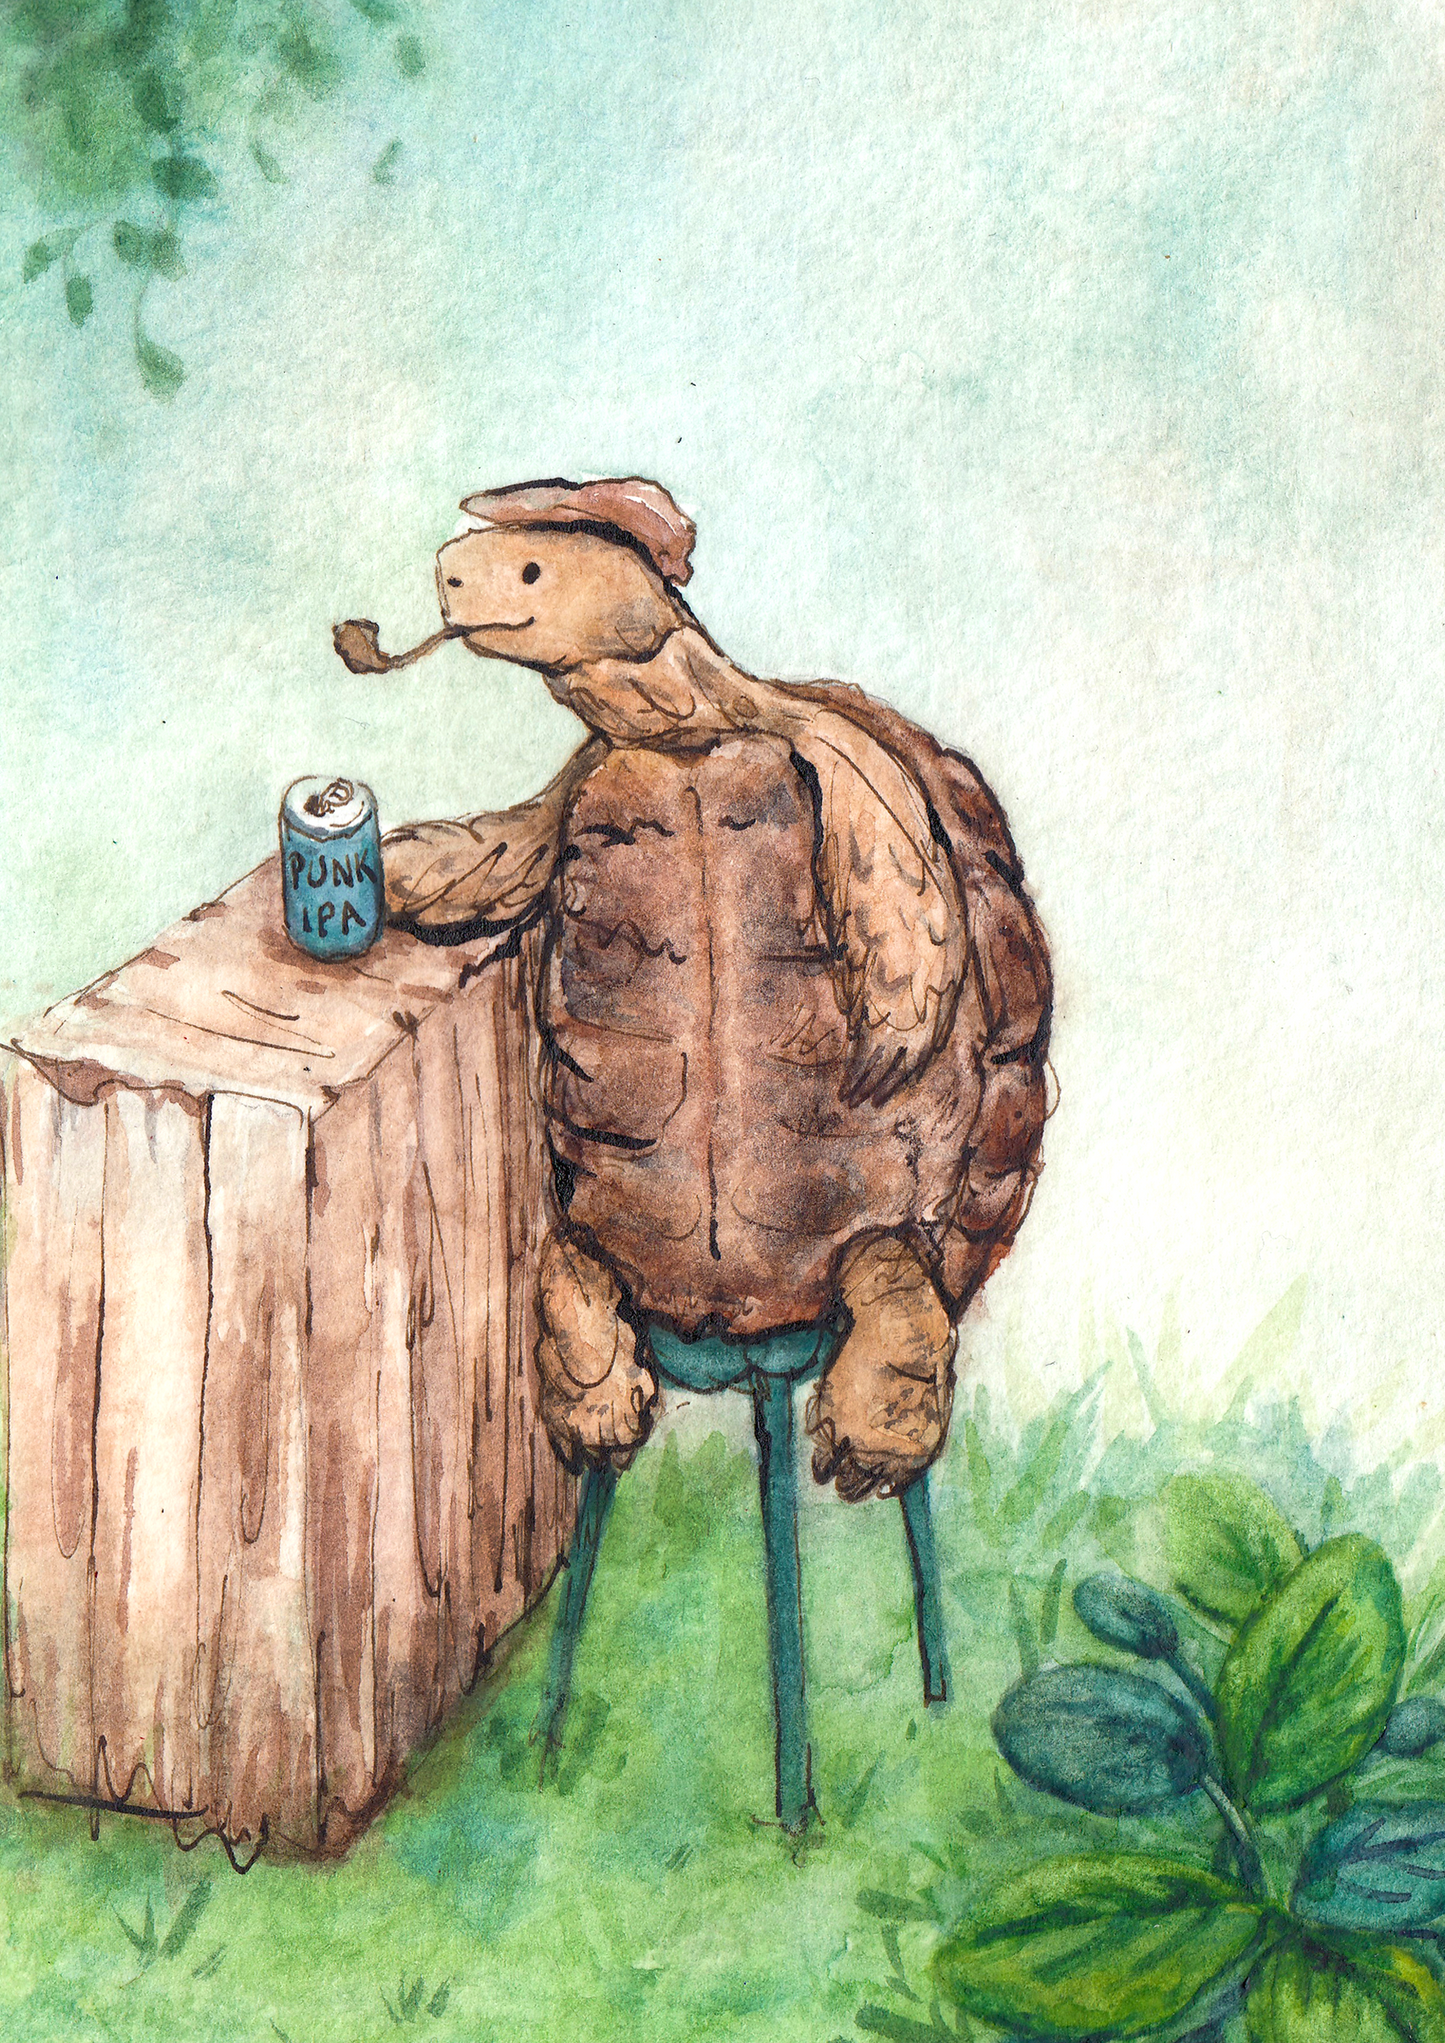 Tortoise having a beer | Print